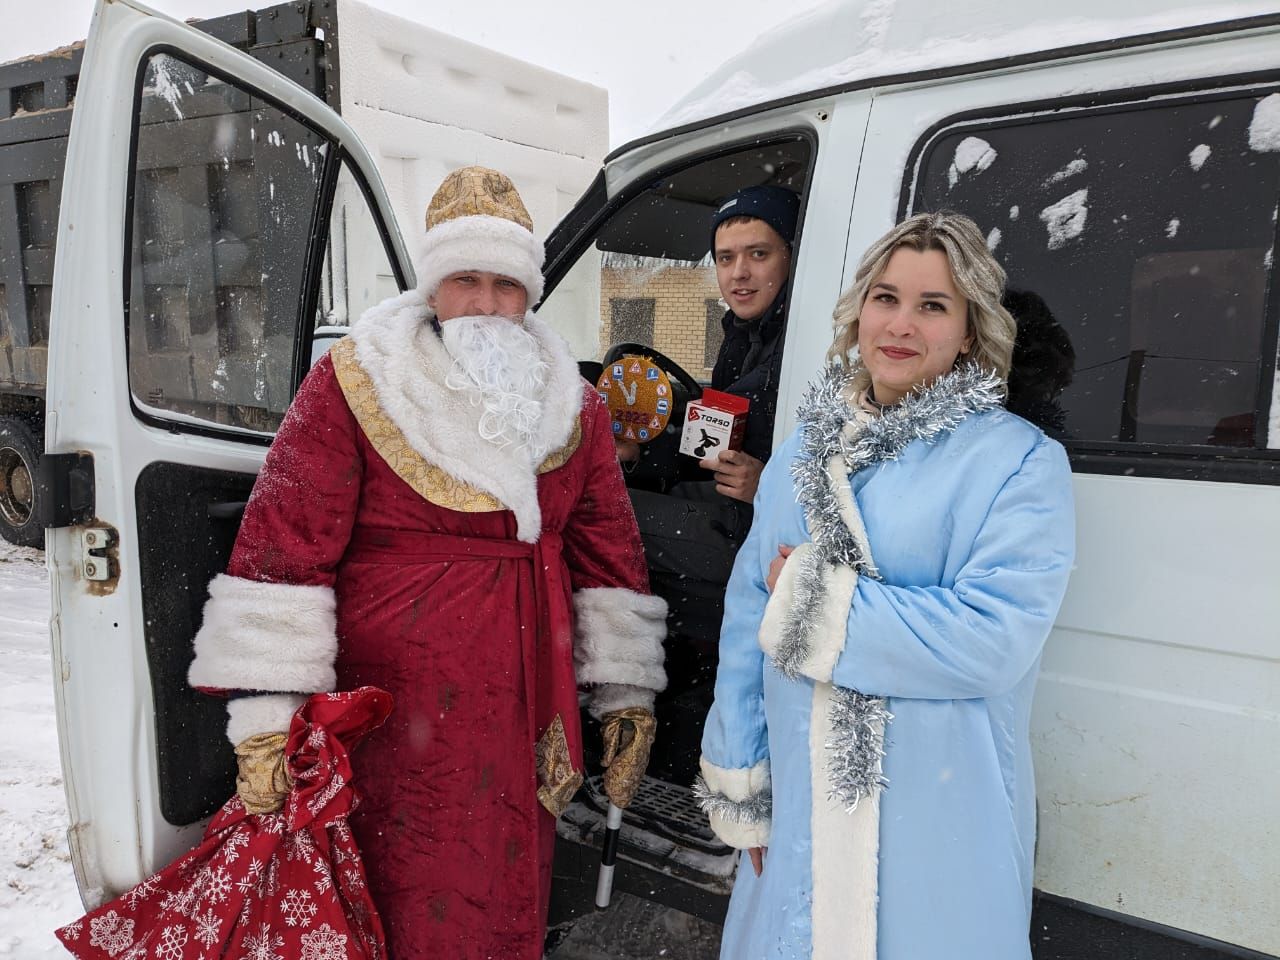 В Теньках Дед Мороз со Снегурочкой напомнили о правилах дорожного движения